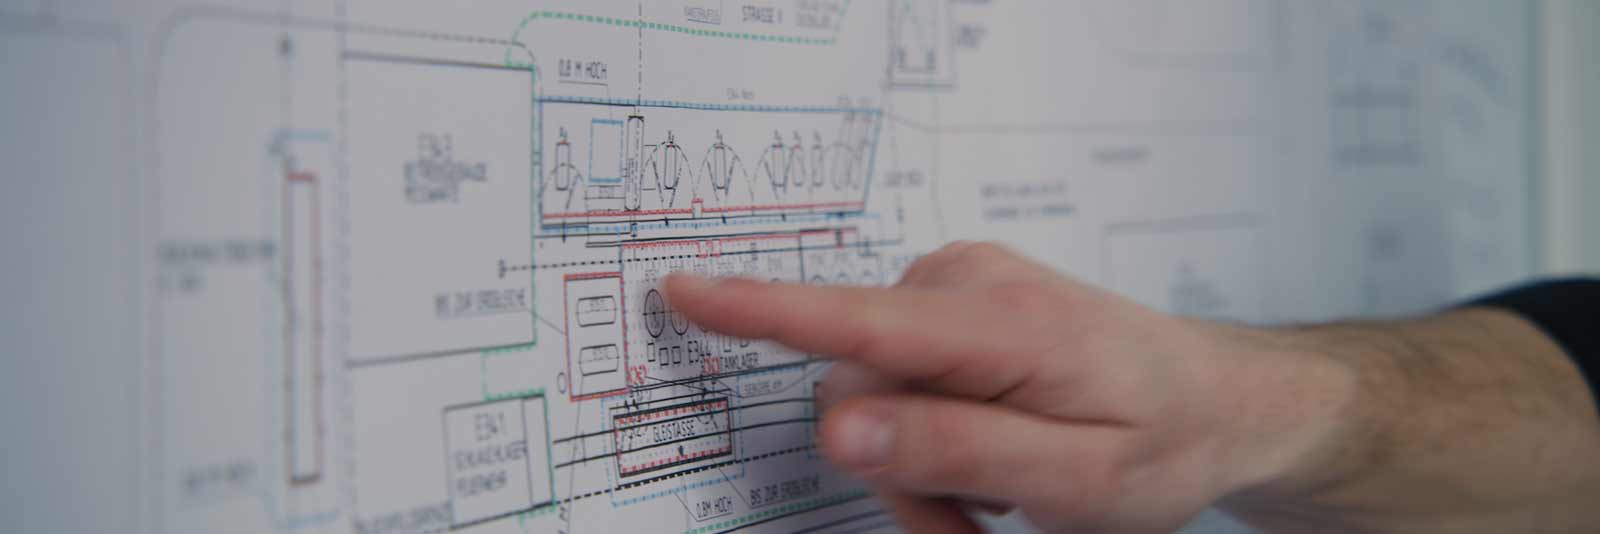 Das Bild zeigt eine Anlagendokumentation als schematische Zeichnung